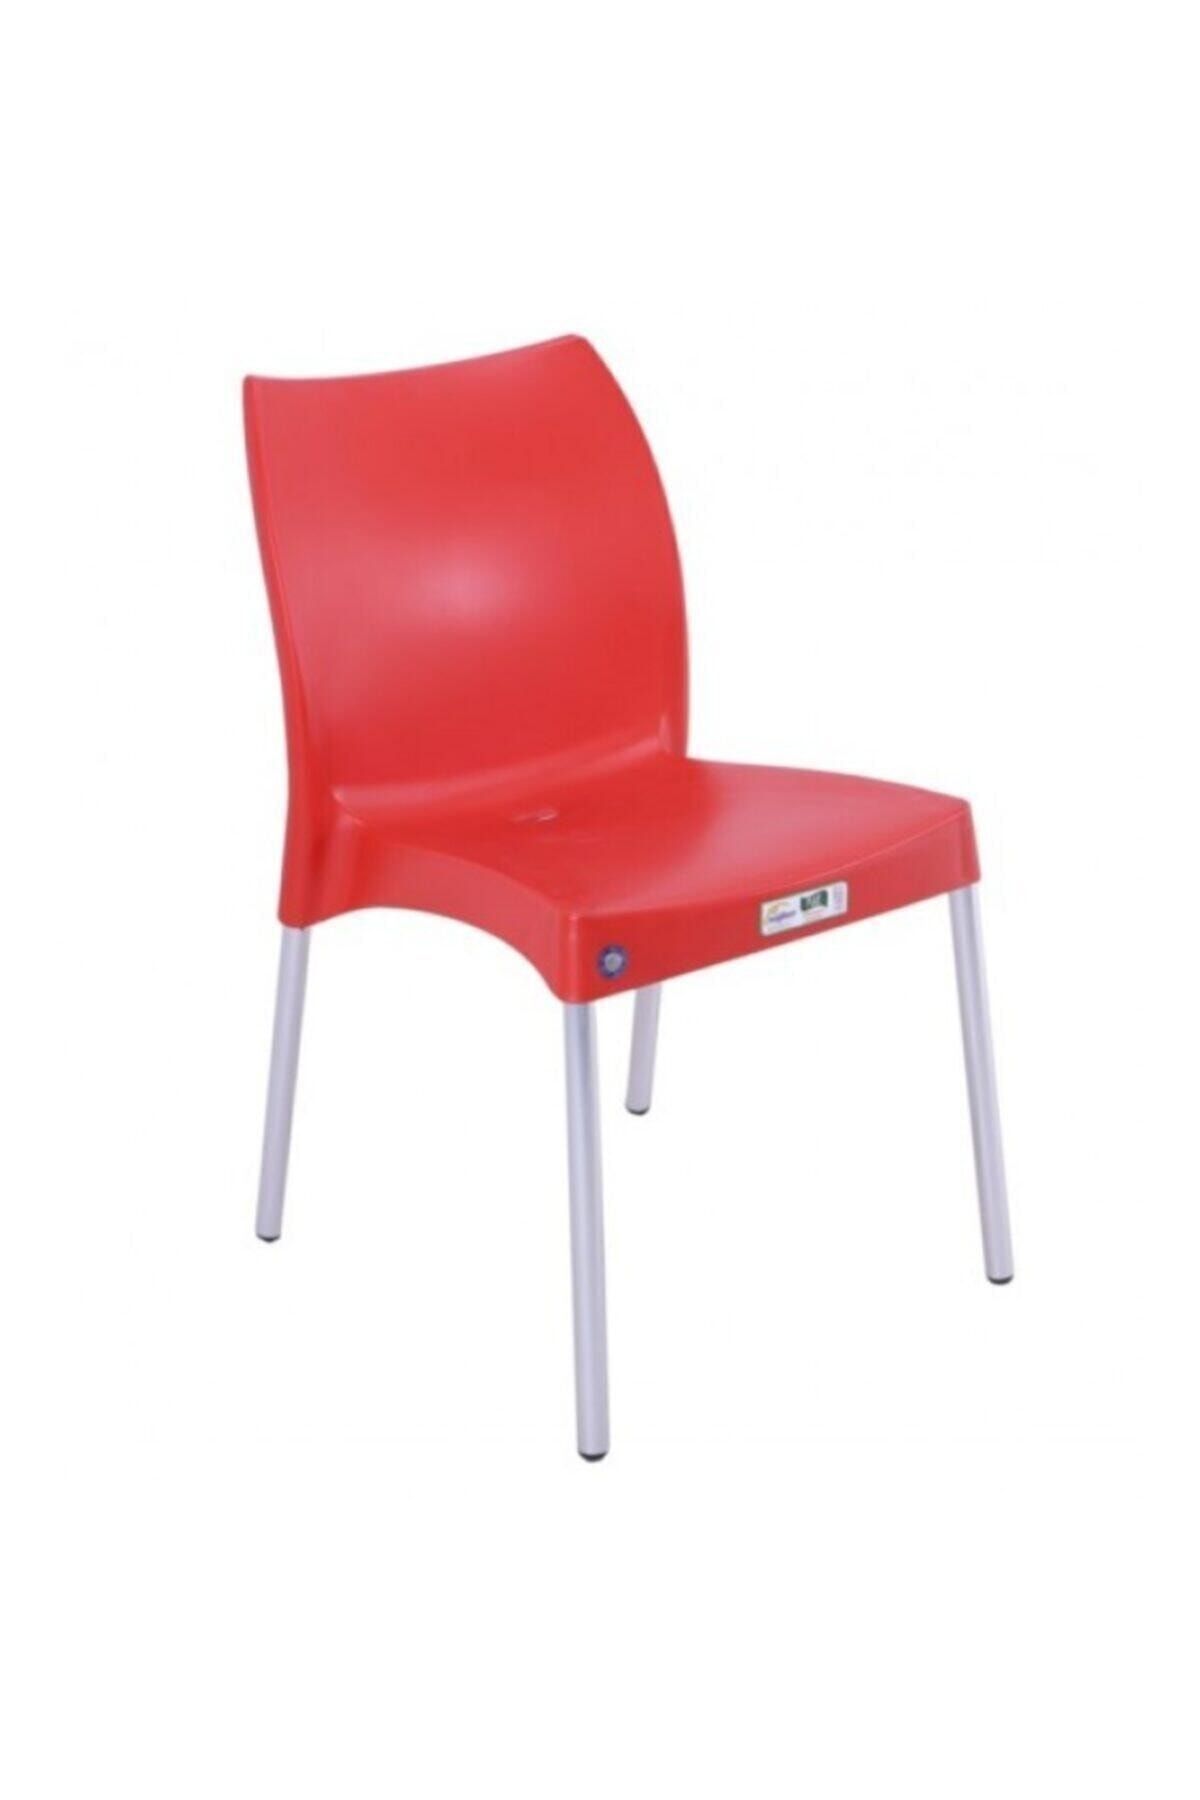 Mandella Nil Sandalye (4 ADET) Alüminyum Ayaklı Kırmızı